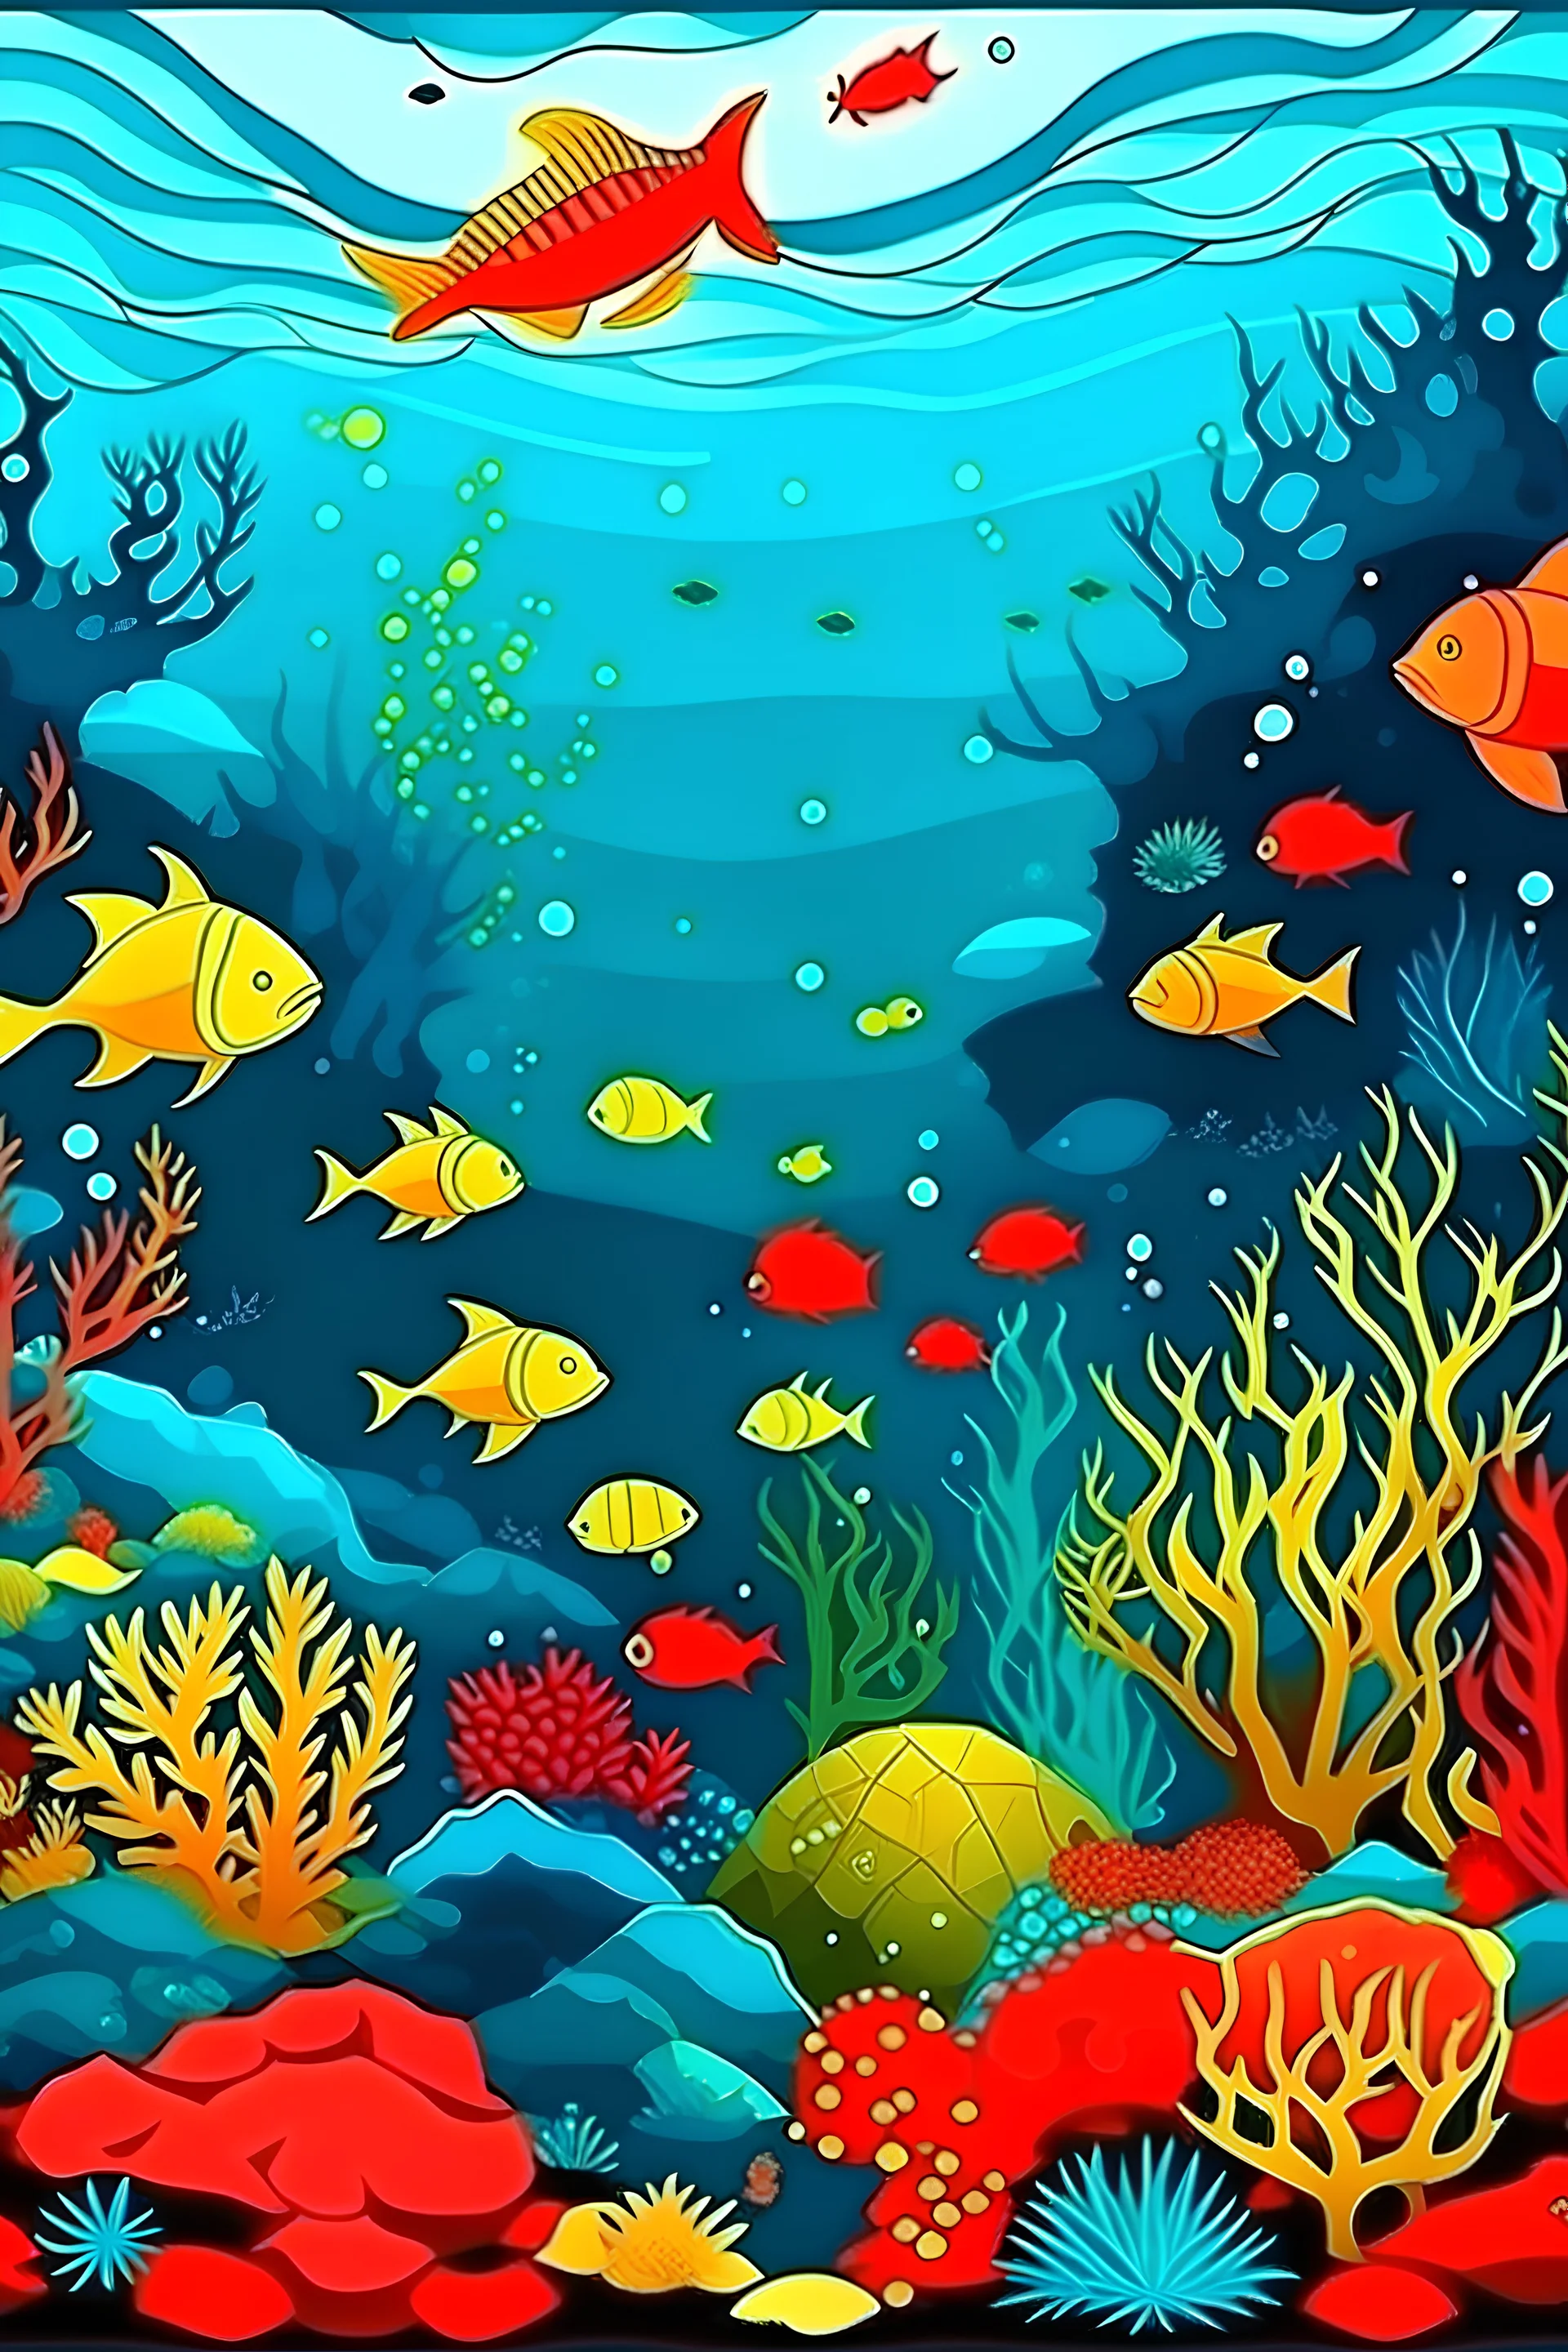 Vista del fondo del mar, con volcanes en el fondo del mar, peces de colores rojos, amarillos, negros, tiburones, corales, estrellas y caballitos de mar, el agua en diferentes tonos de azules y verdes